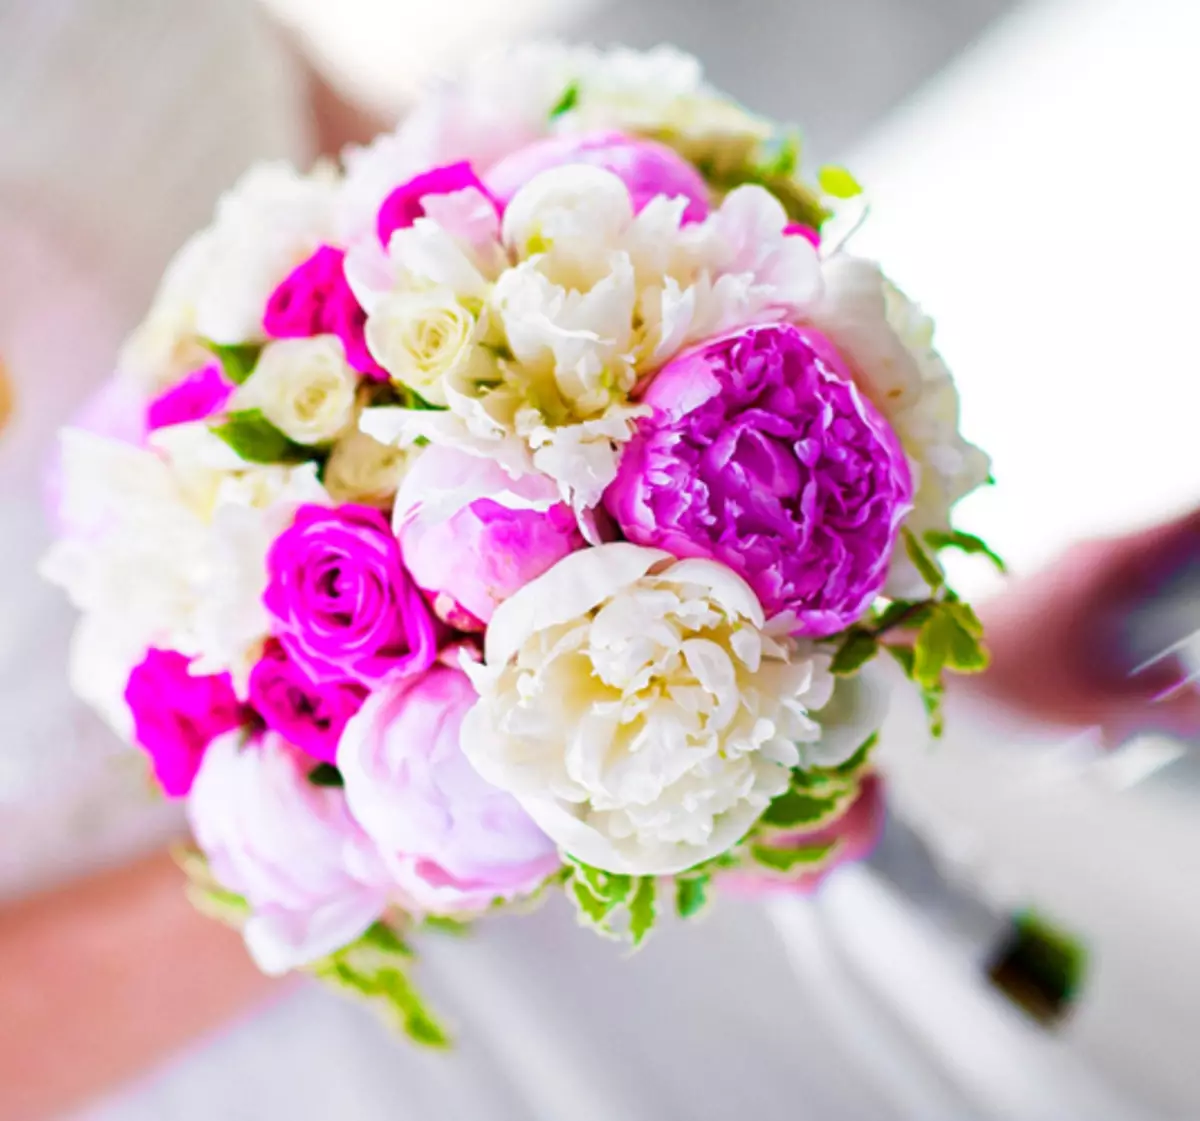 모란의 결혼식 꽃다발 (108 사진) : 흰색 수문과 빨간 칼라와의 조합, 결혼식 꽃다발의 부르고뉴, 라일락 및 자주색 꽃의 조합 8013_7